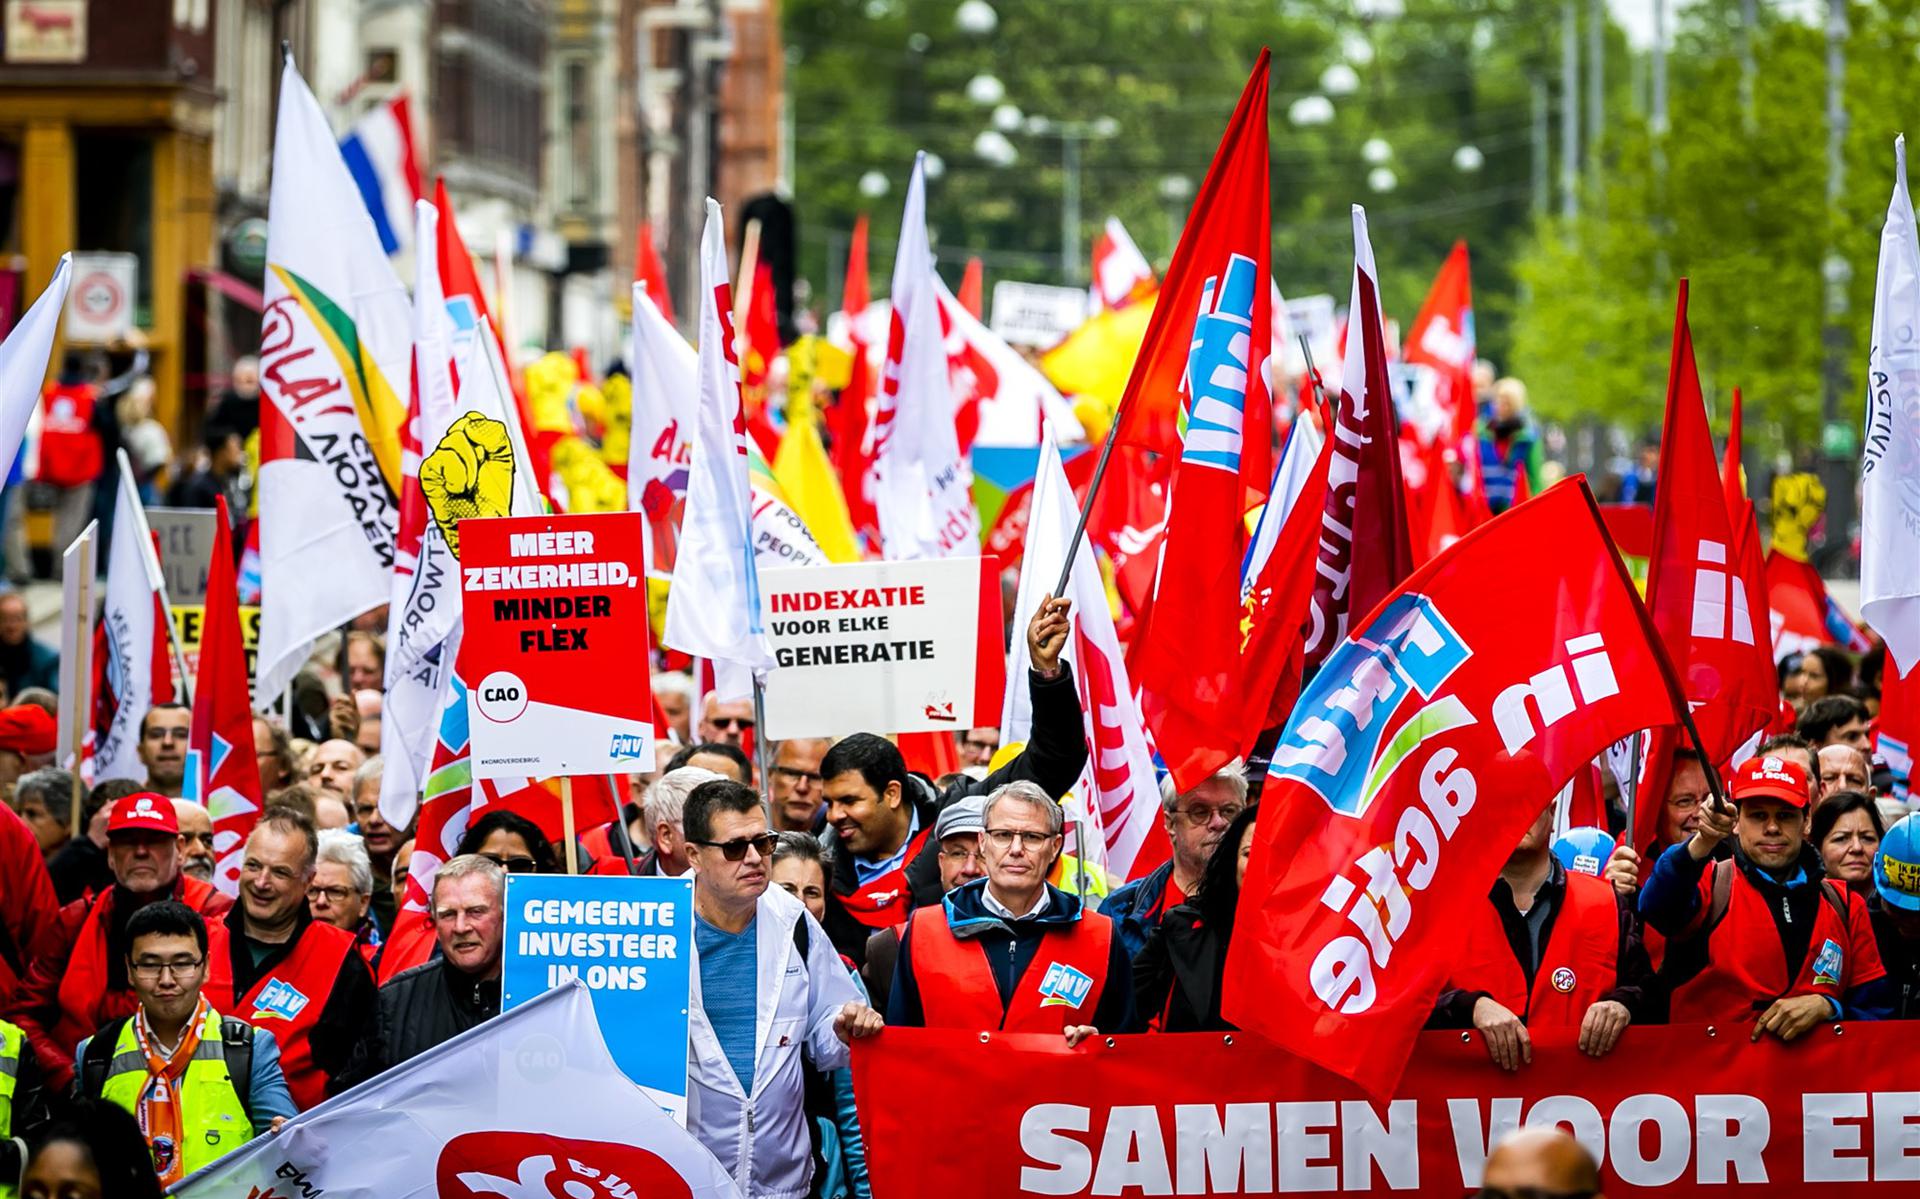 De FNV-mars door het centrum van Amsterdam tijdens de 1 meiviering op de Dag van de Arbeid in 2019. 